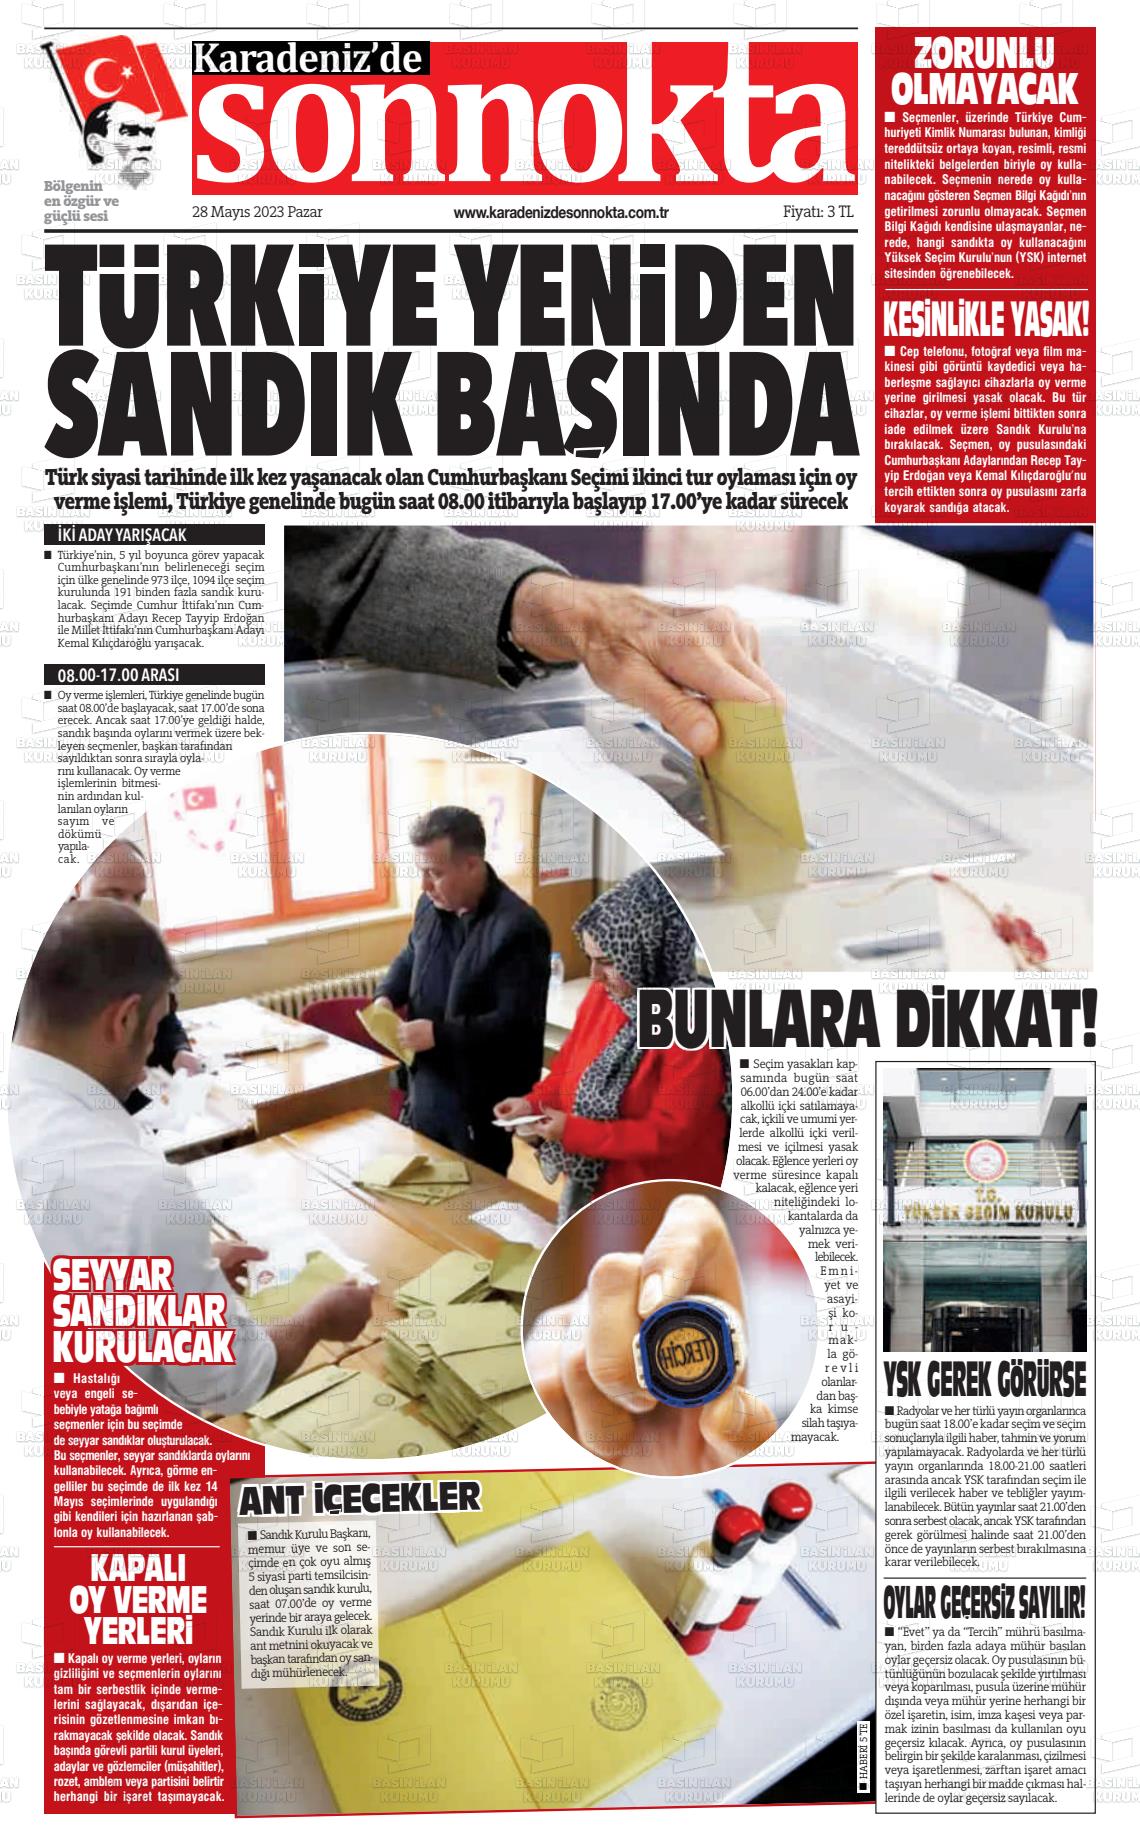 28 Mayıs 2023 Karadeniz'de Sonnokta Gazete Manşeti